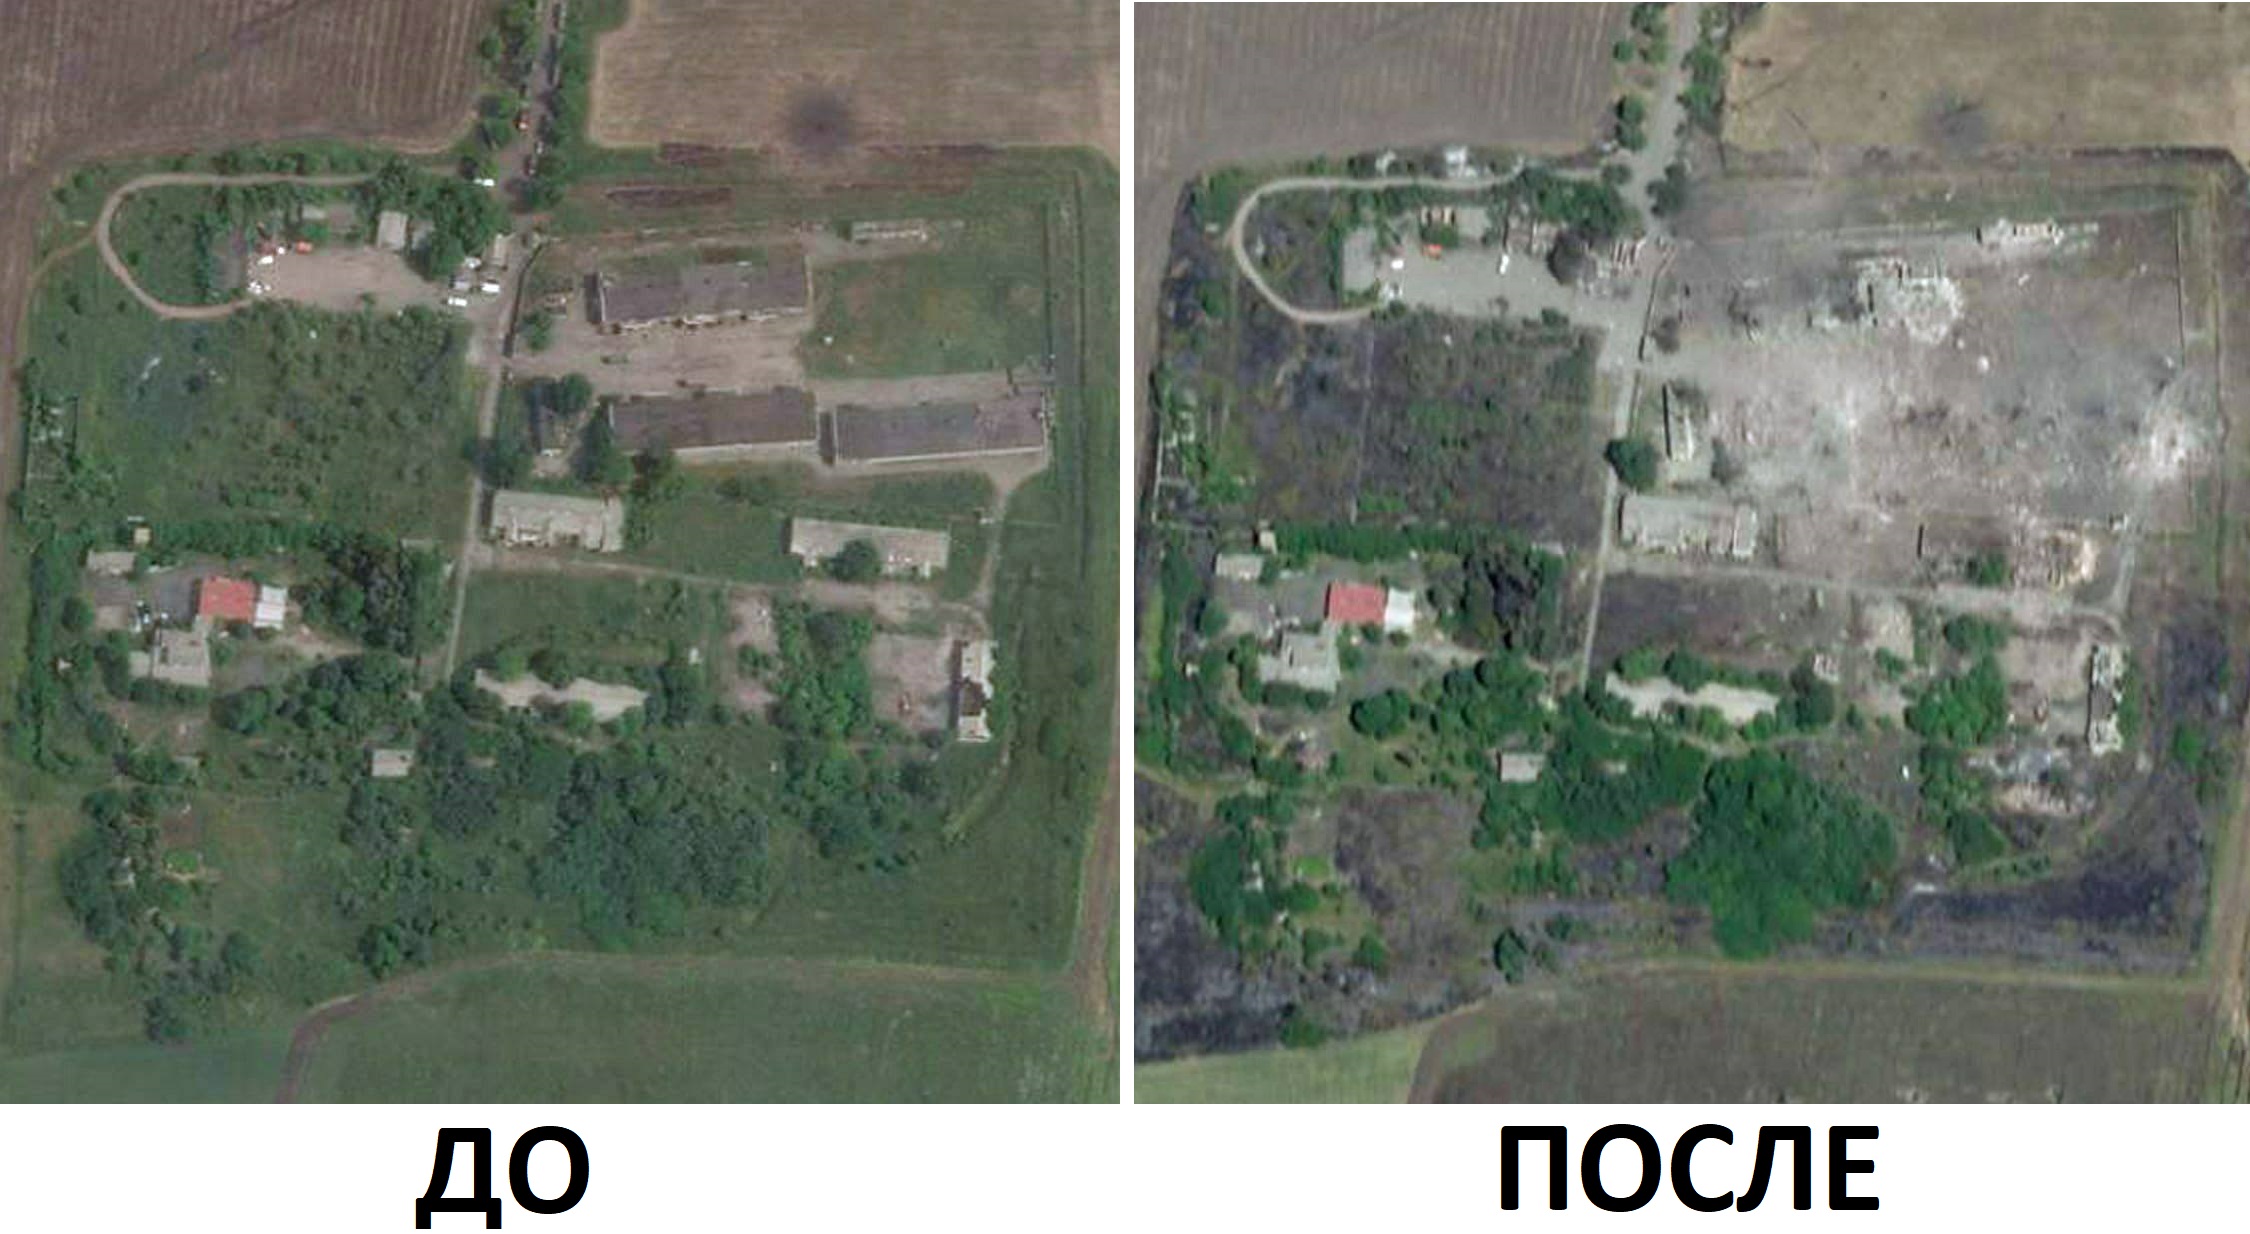 Zdjęcia satelitarne pokazały, co pozostało z magazynu amunicji w Szachtiorsku po strajku HIMARS (nic)